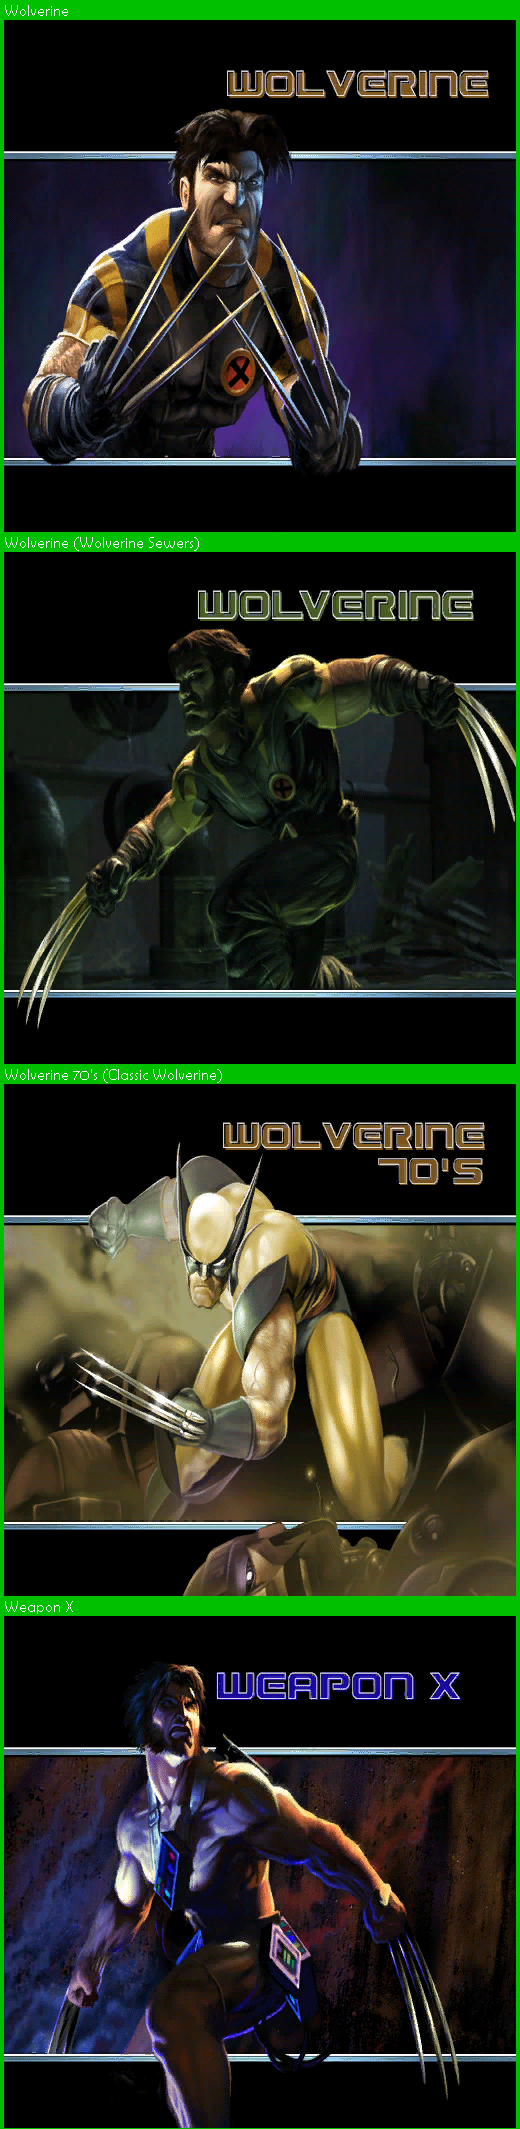 X-Men Legends - Wolverine